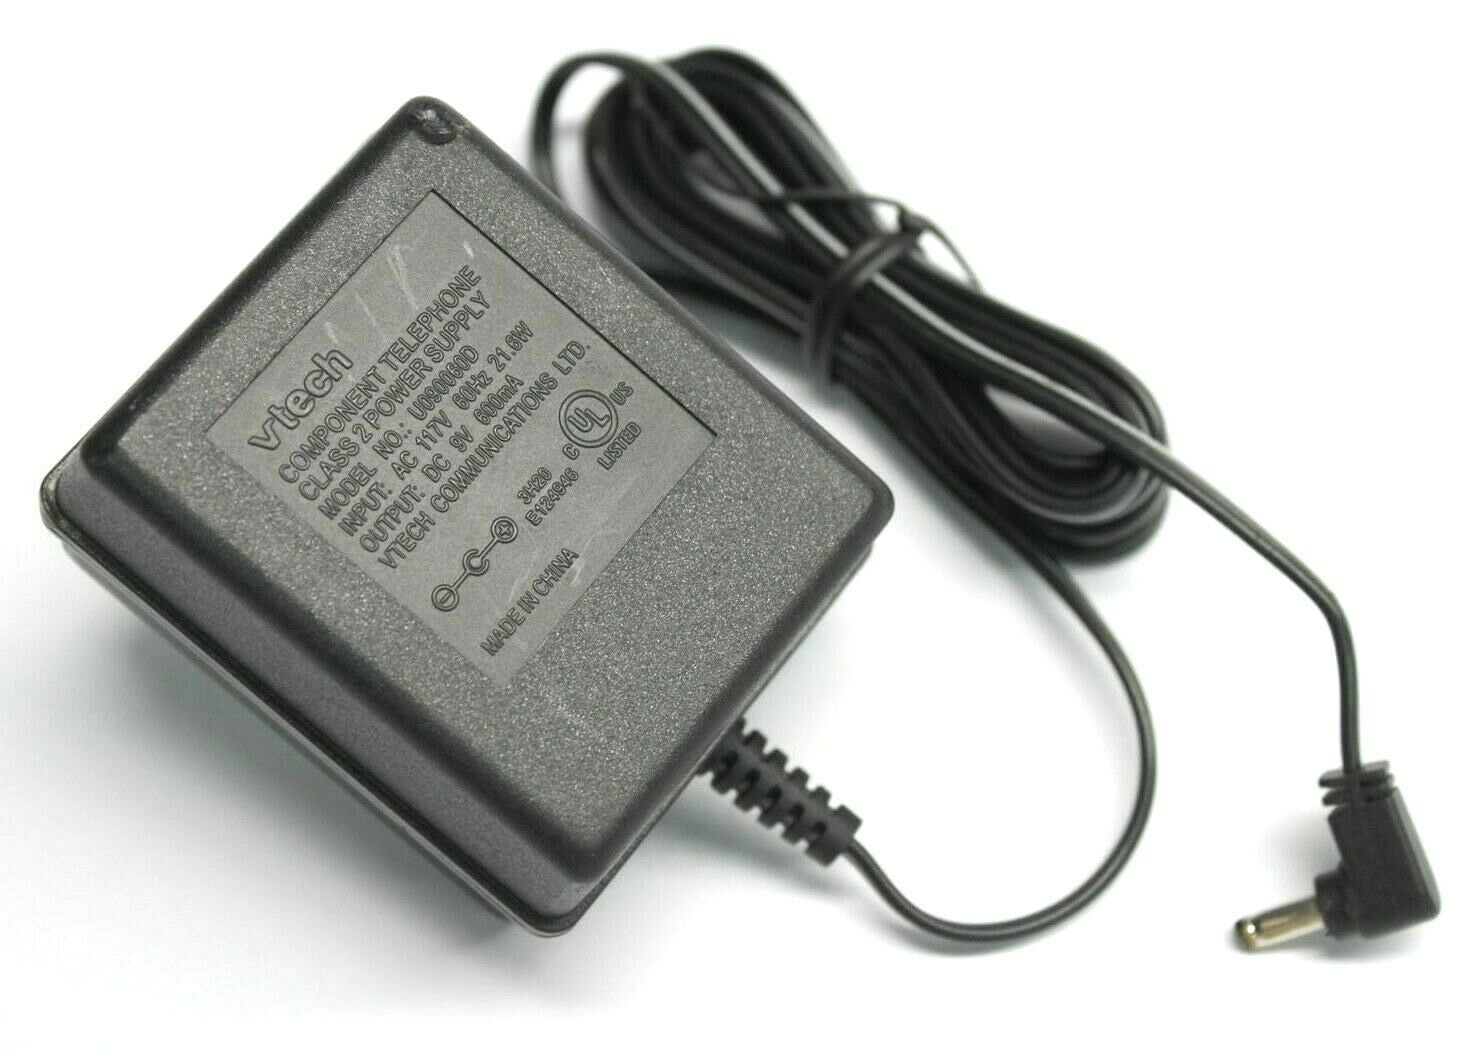 Vtech U090060D Power Supply AC Adapter Input 117V 60Hz 21.6W Output 9V 600mA Brand: Vtech Type: